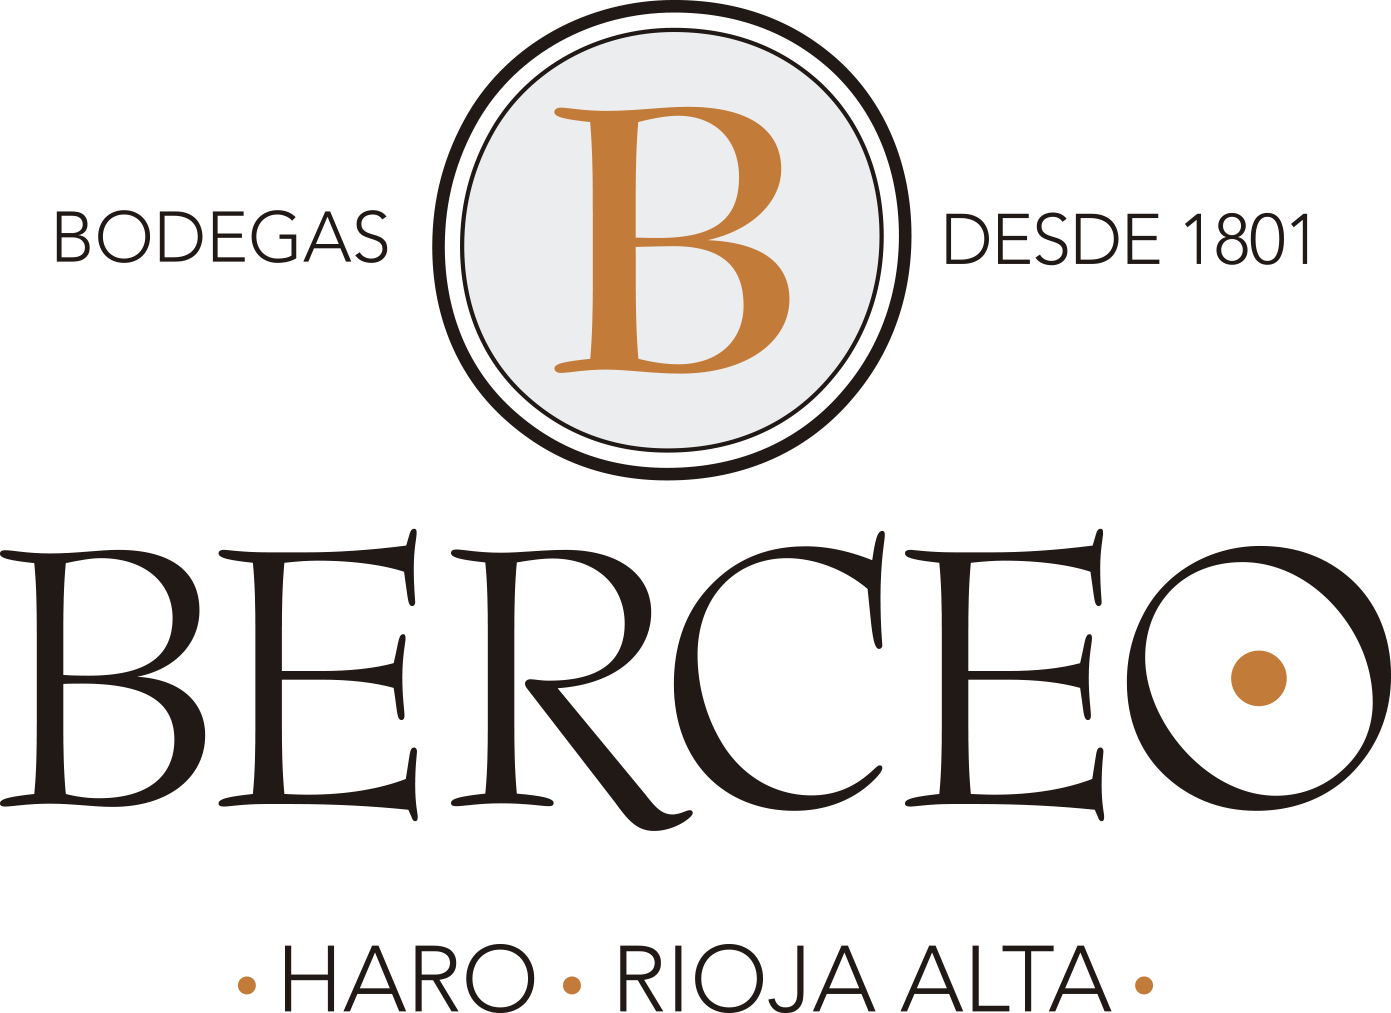 Logo de la bodega Bodegas Berceo